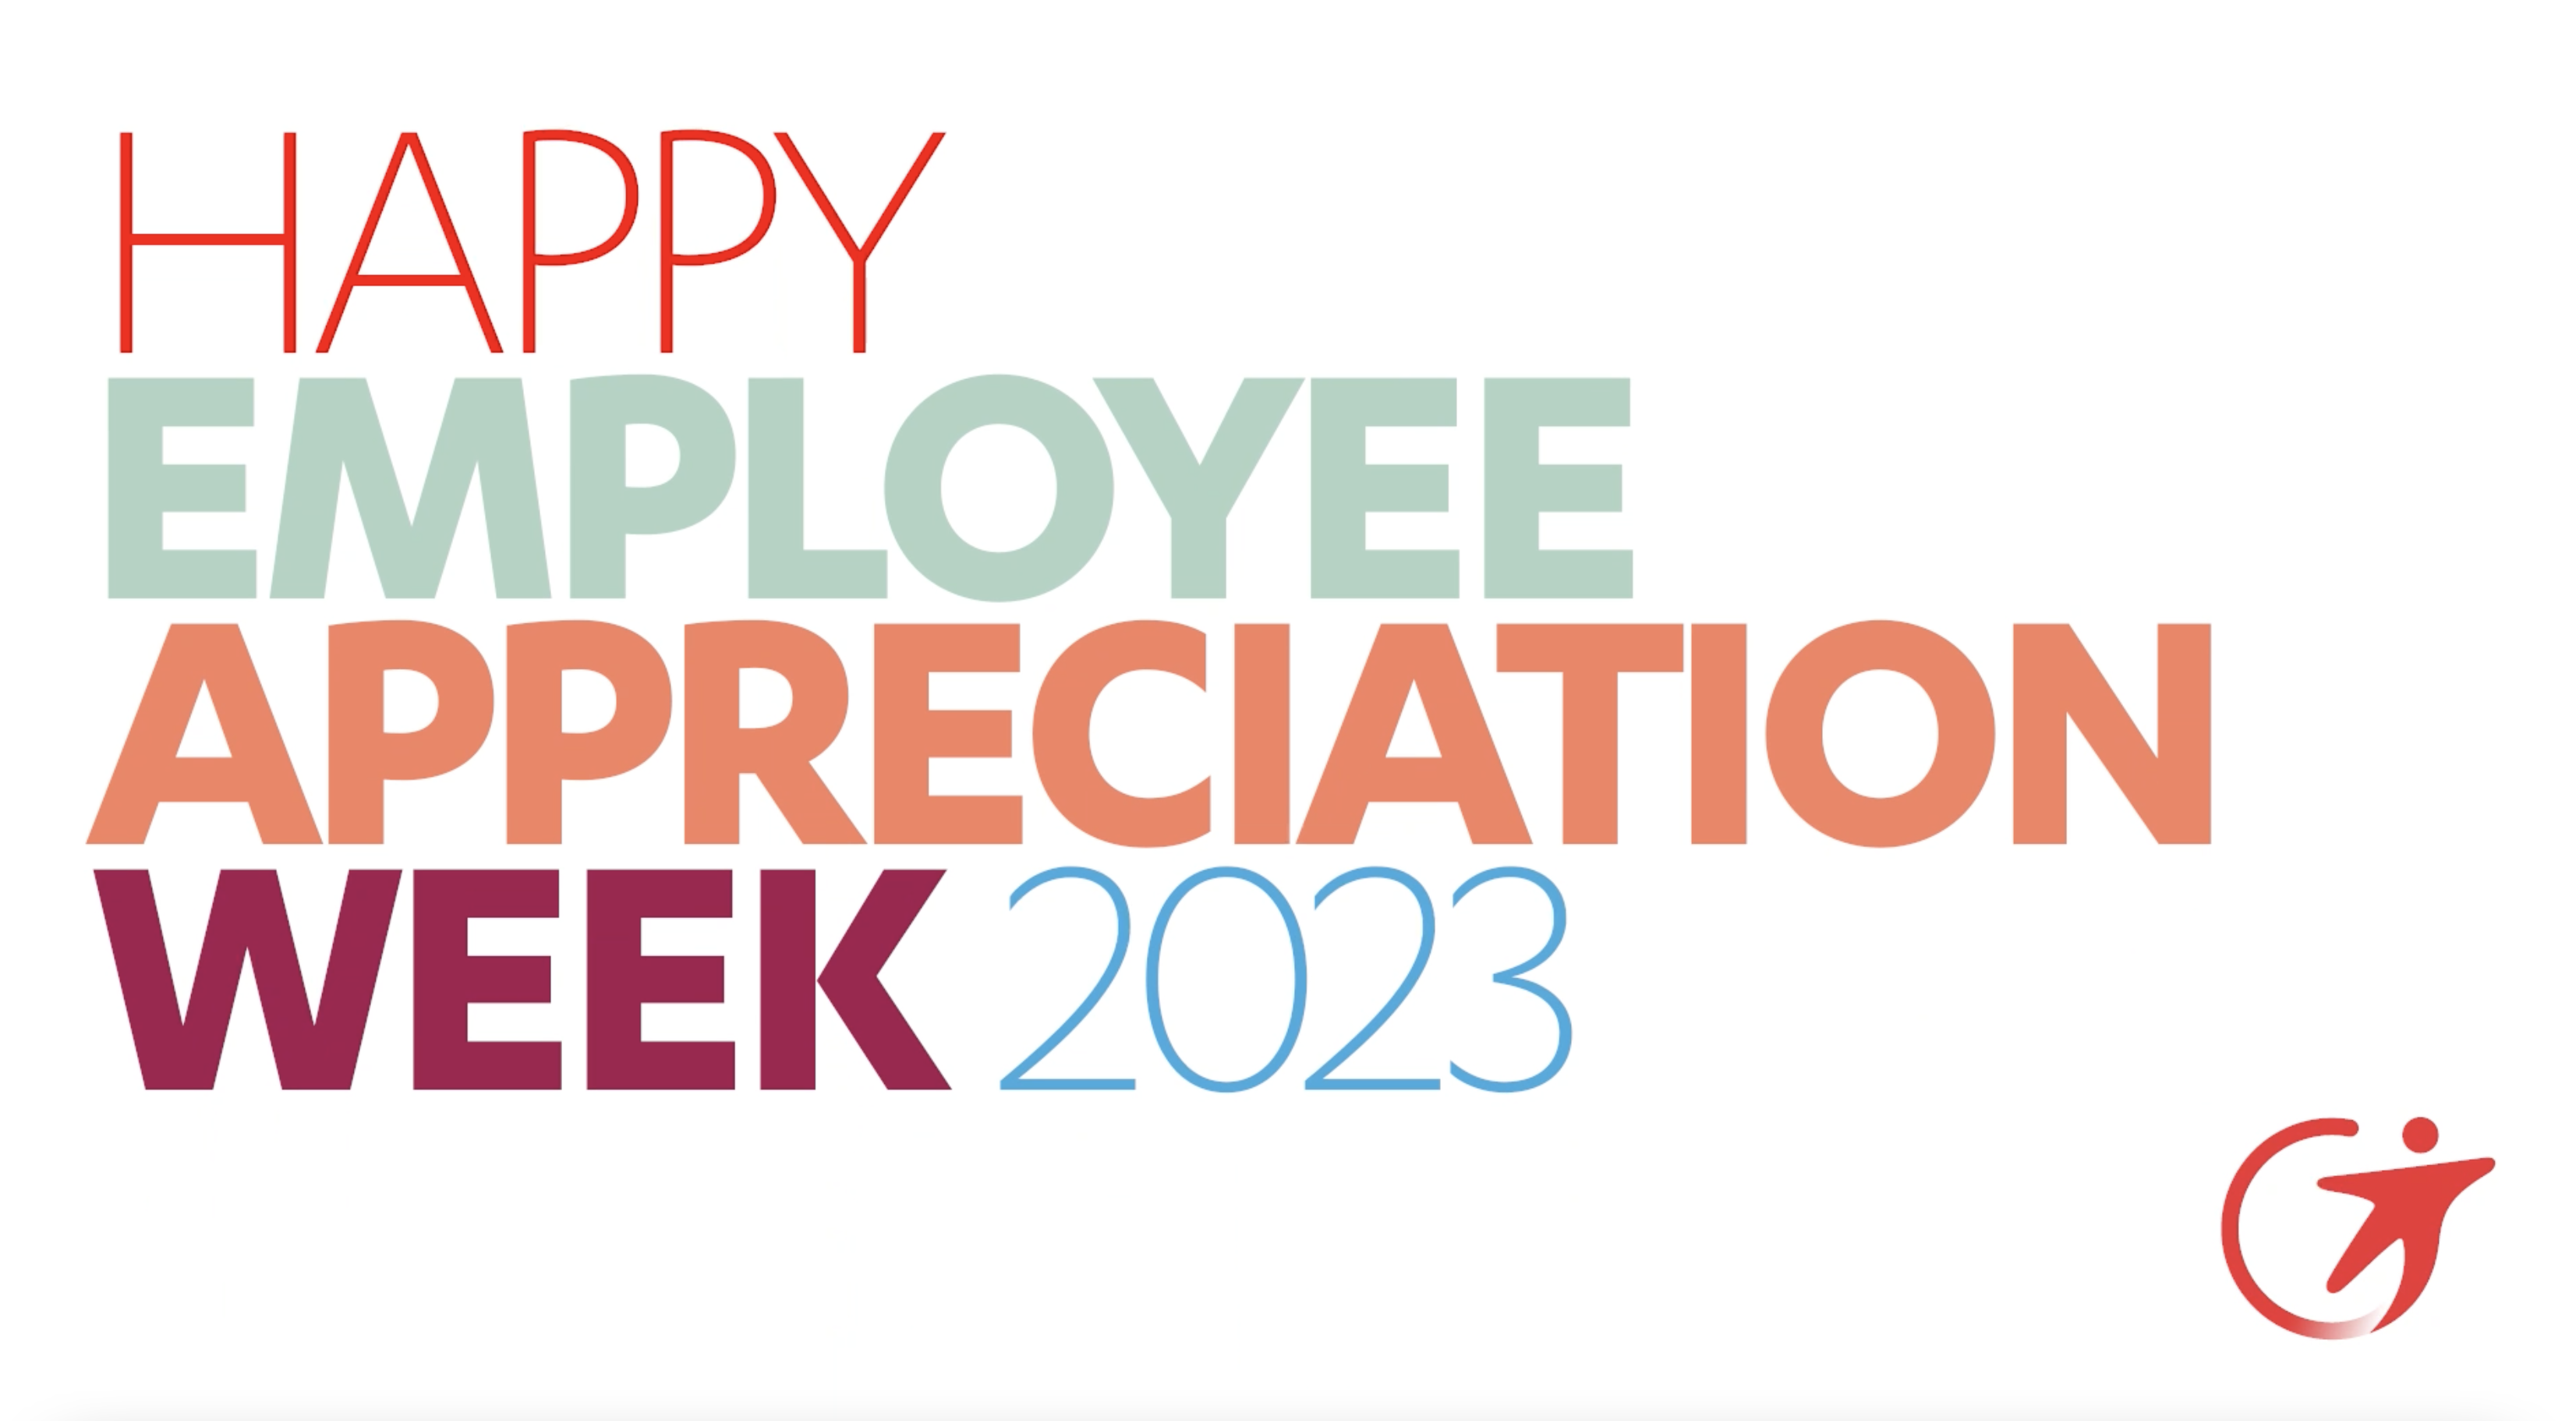 Employee Appreciation Week